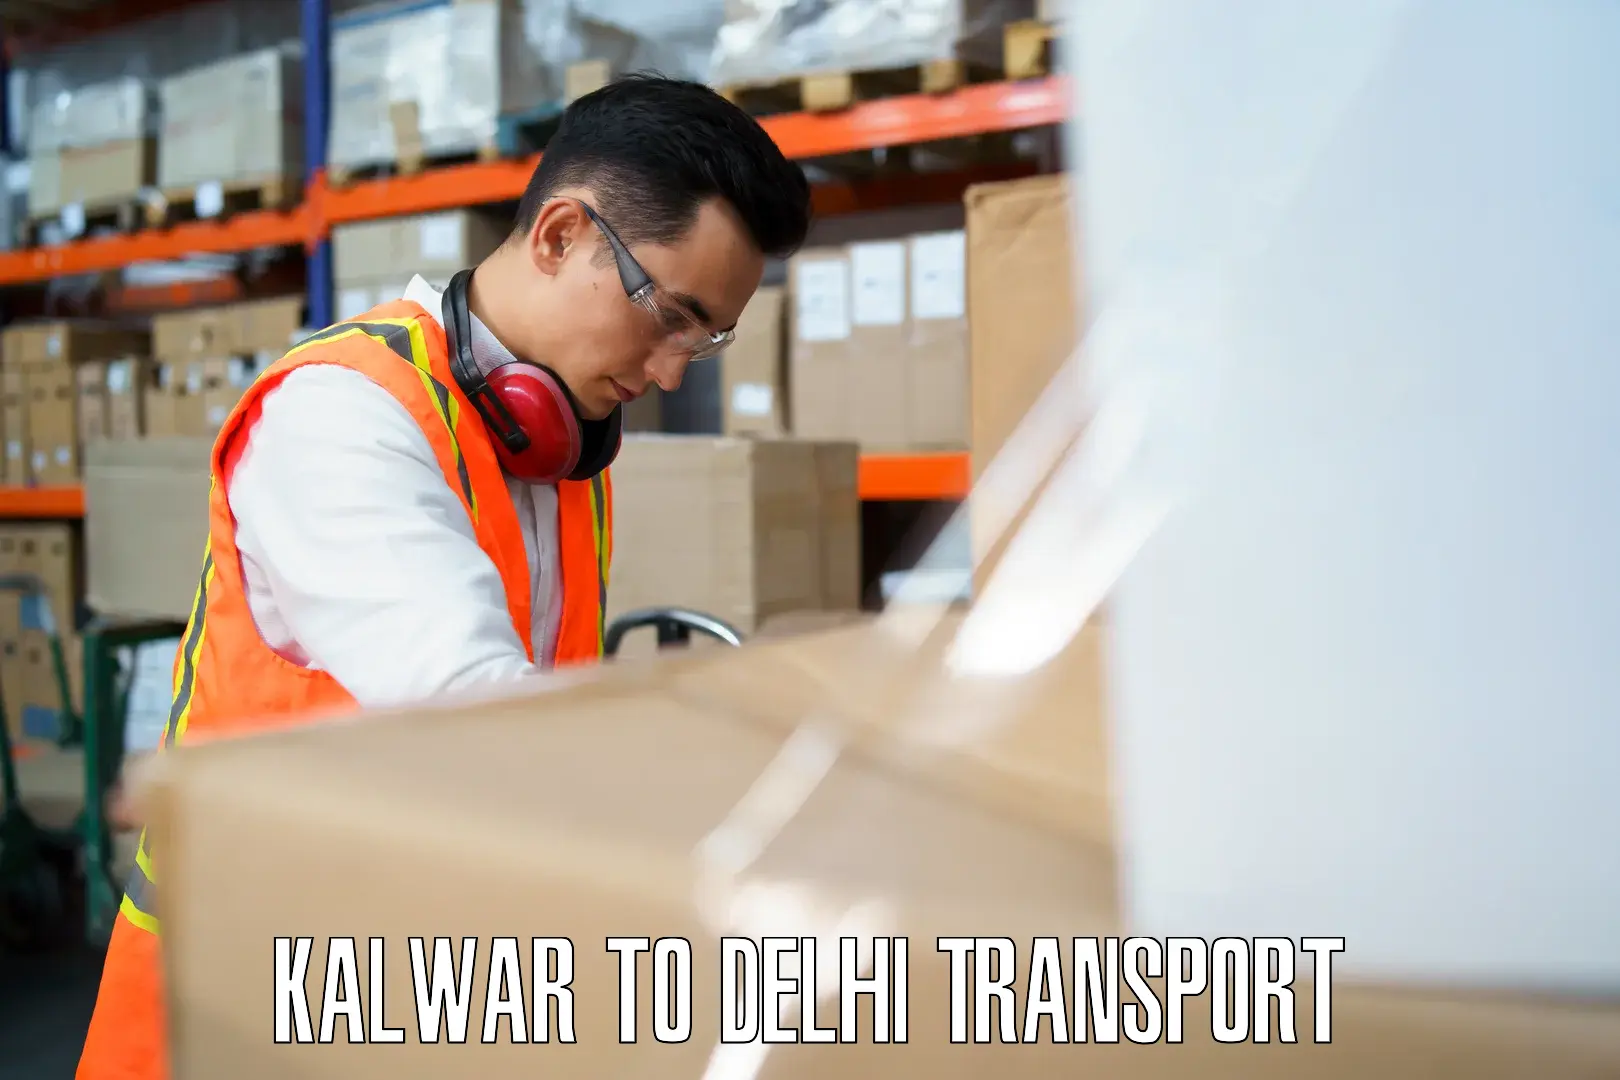 Pick up transport service Kalwar to Delhi